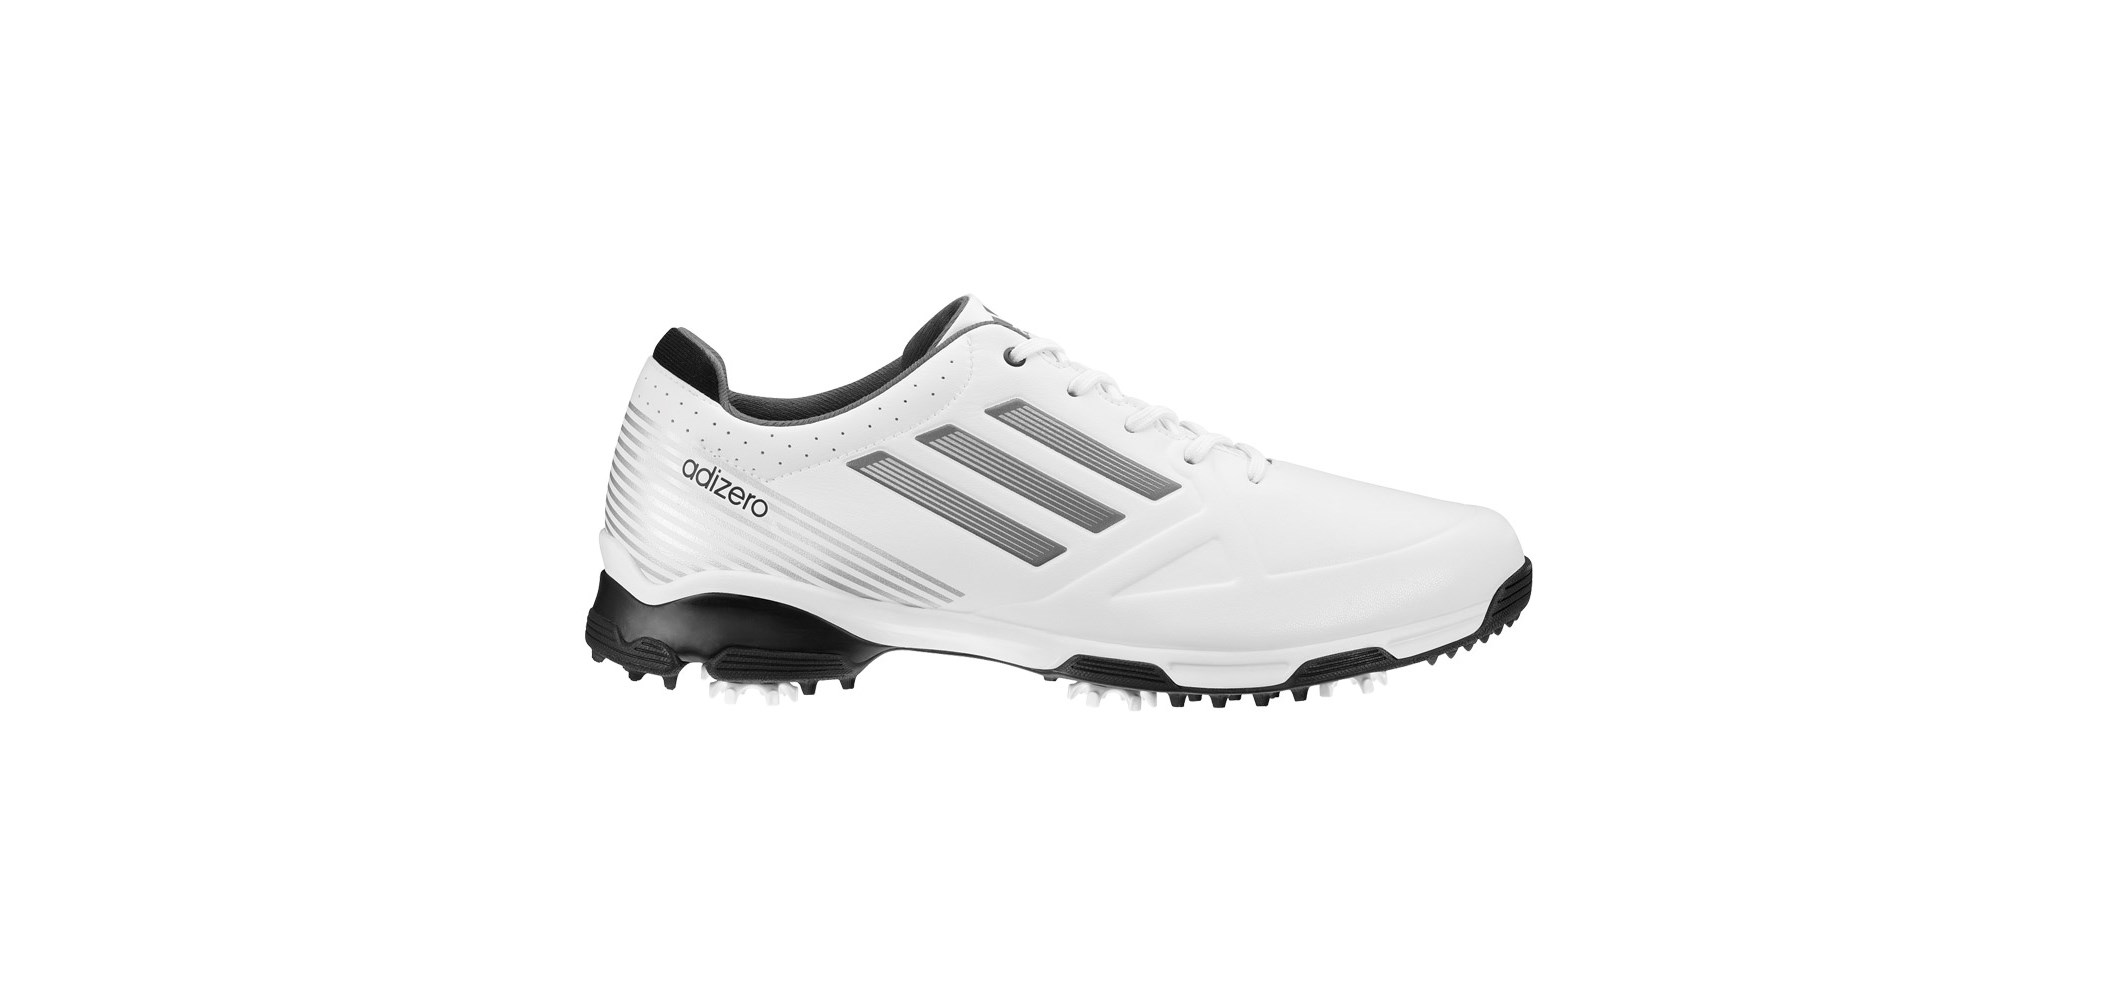 Creed udtrykkeligt Nævne adidas Adizero 6 Spike Golf Shoe - White/Black